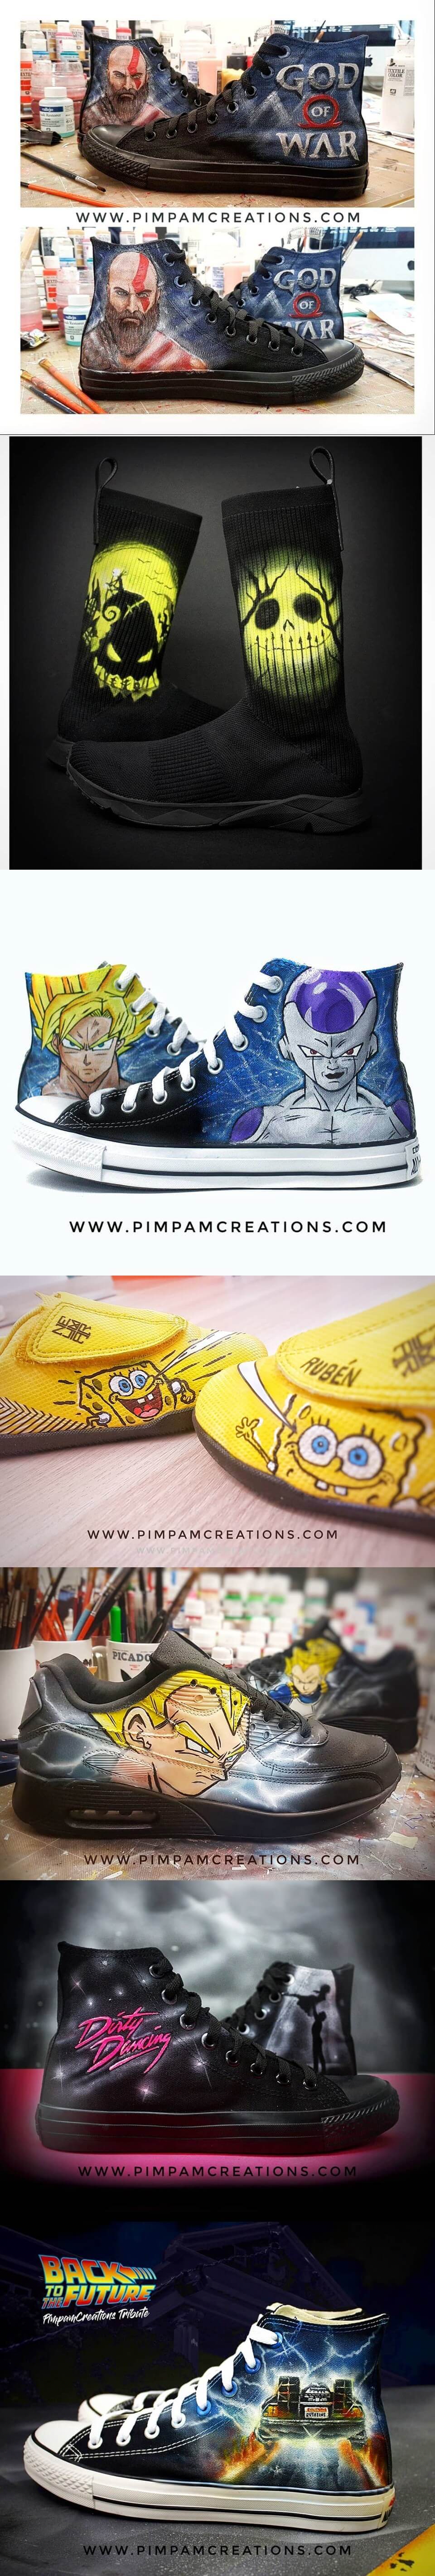 Zapatillas Personalizadas con PimPam Creations 